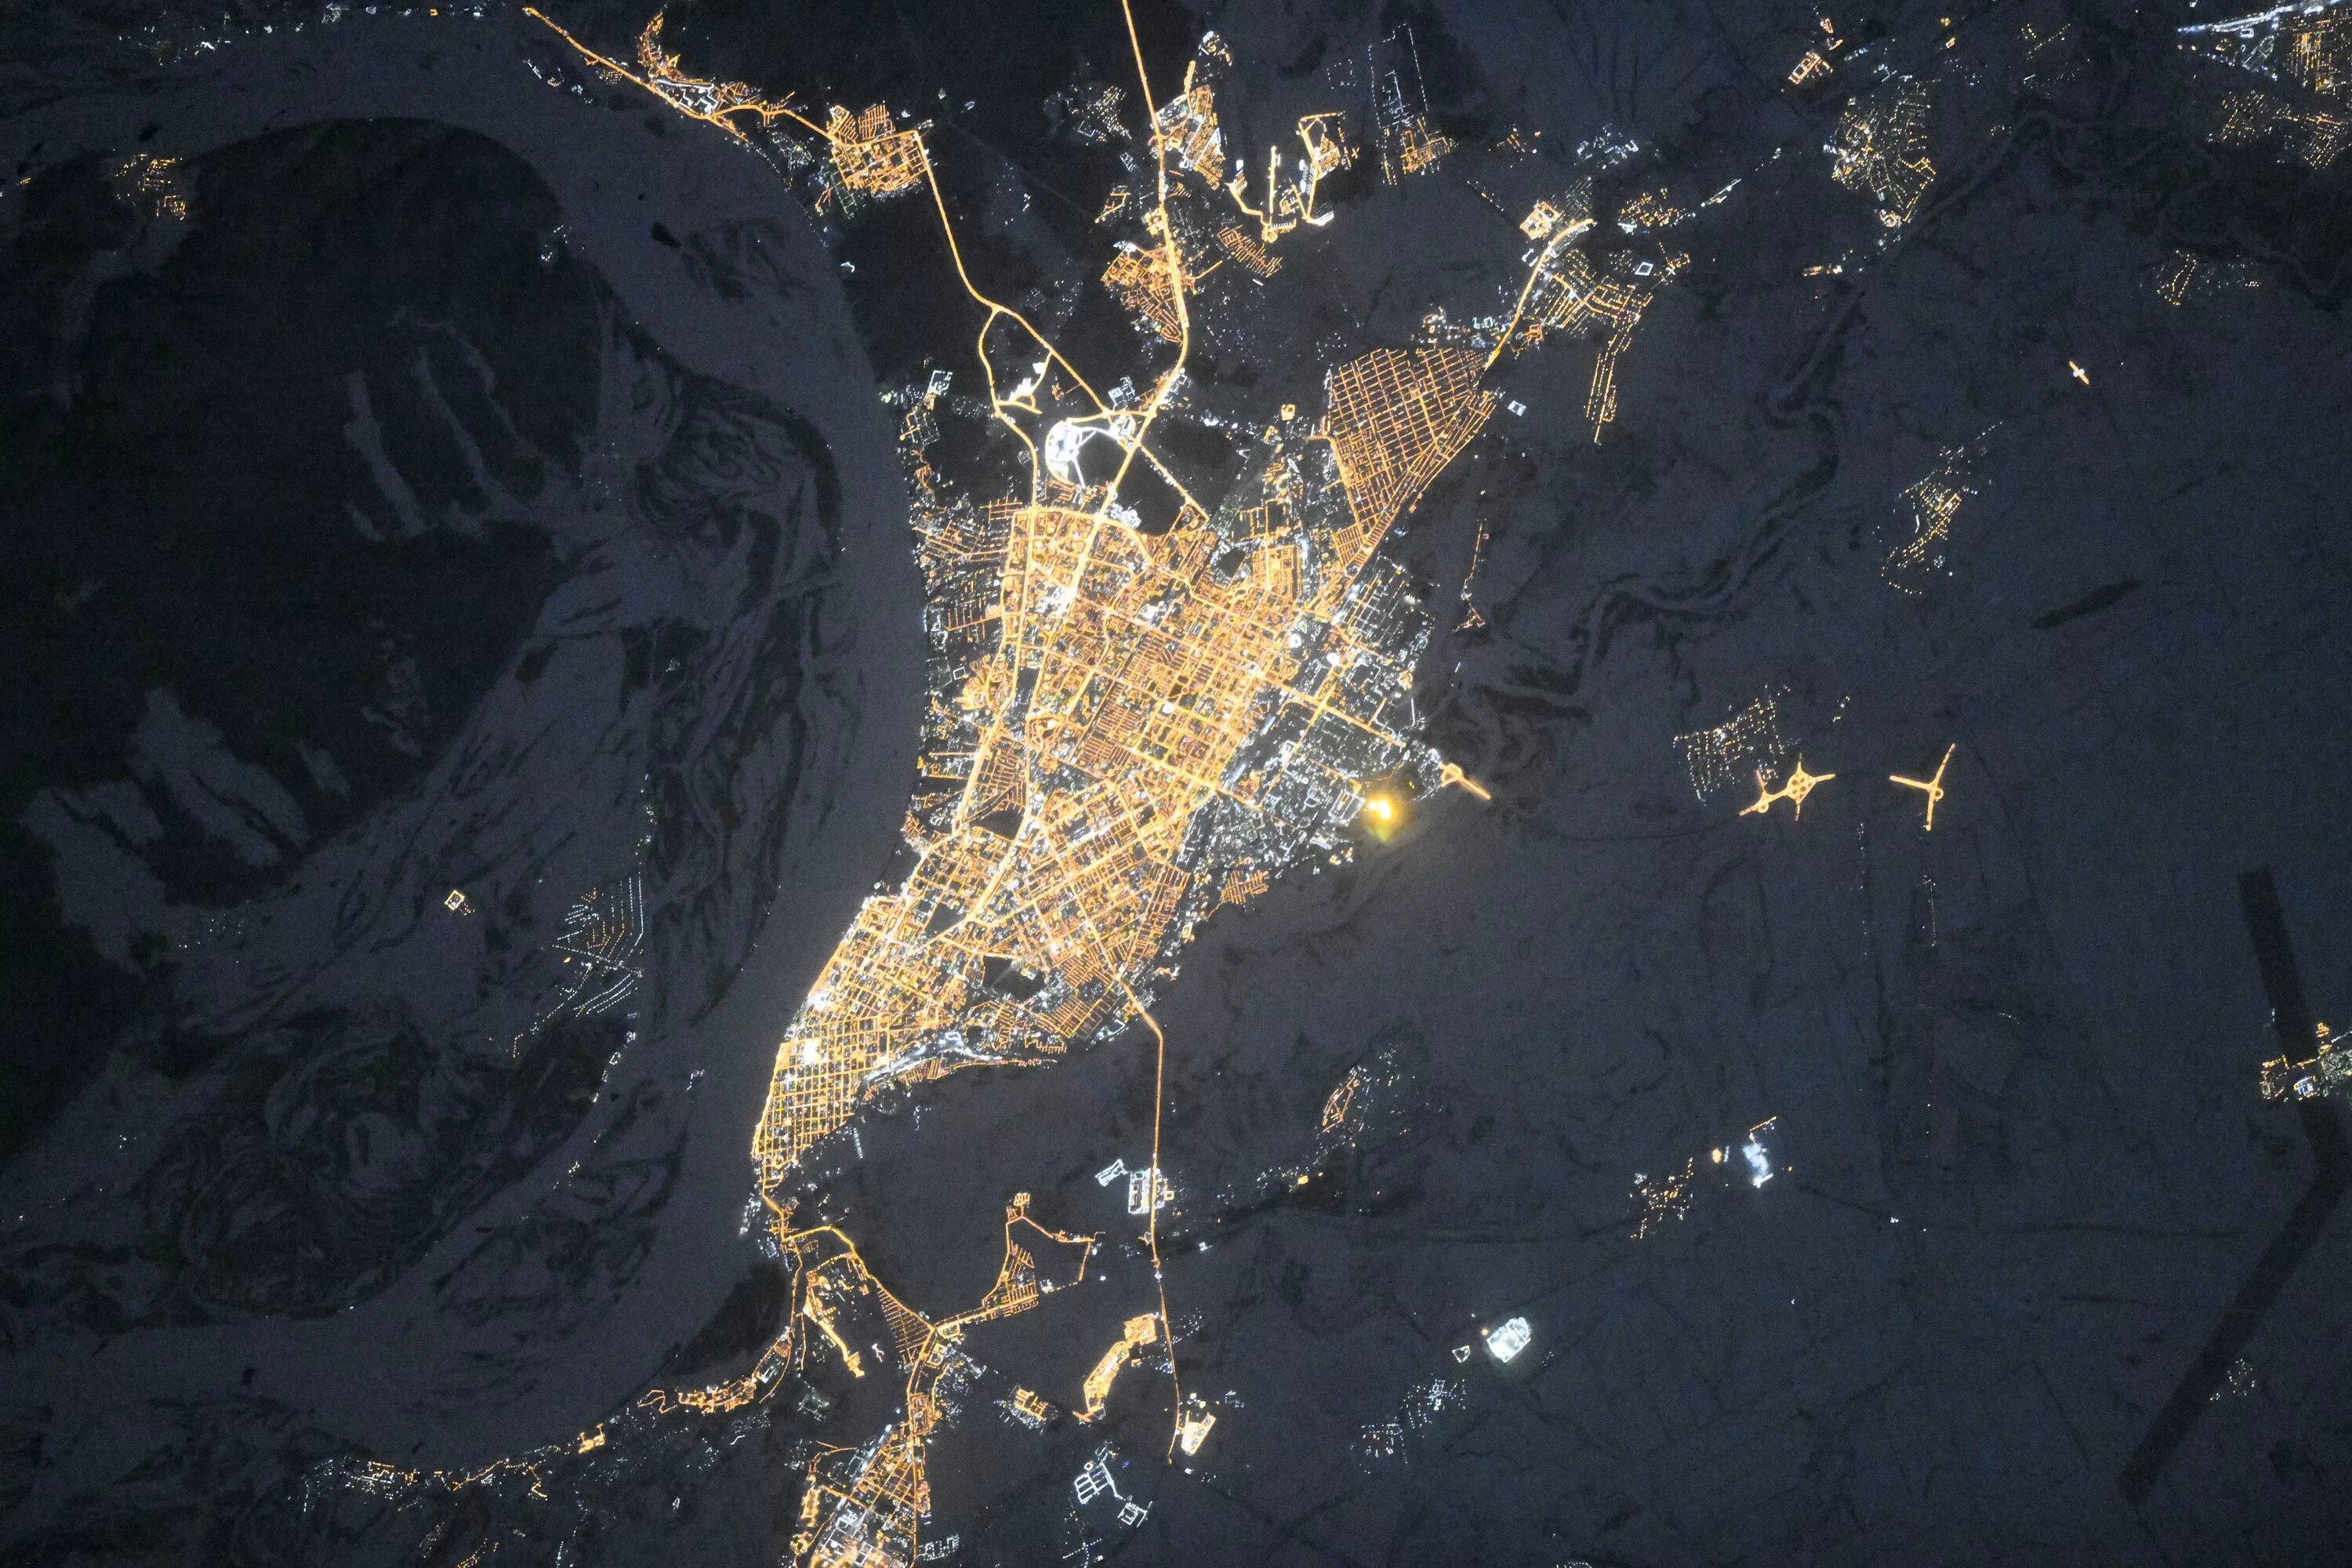 Чебоксары в реальном времени. Снимок Самары из космоса. Ночной снимок из космоса город Самара. Космические снимки. Город в космосе.